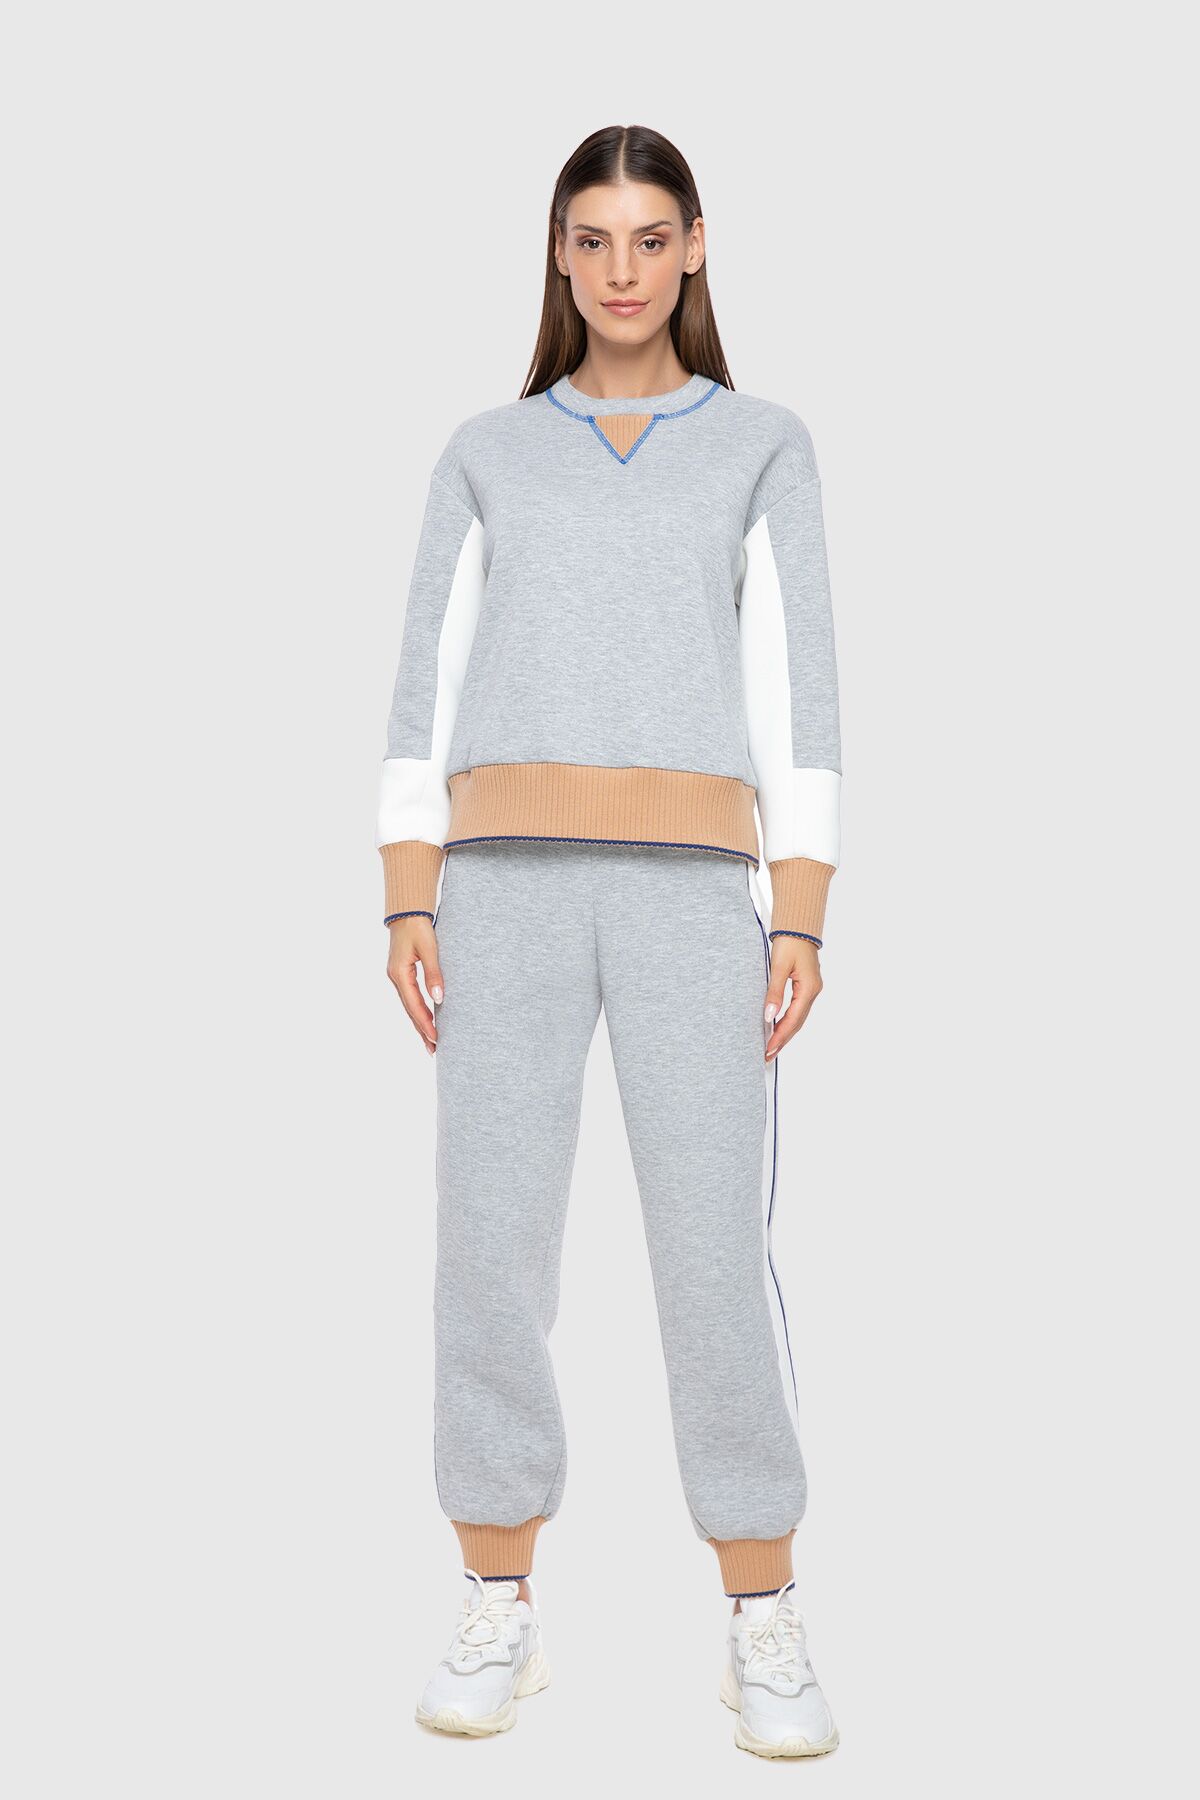 GIZIA SPORT - Knitwear Detailed Gray Sweatshirt